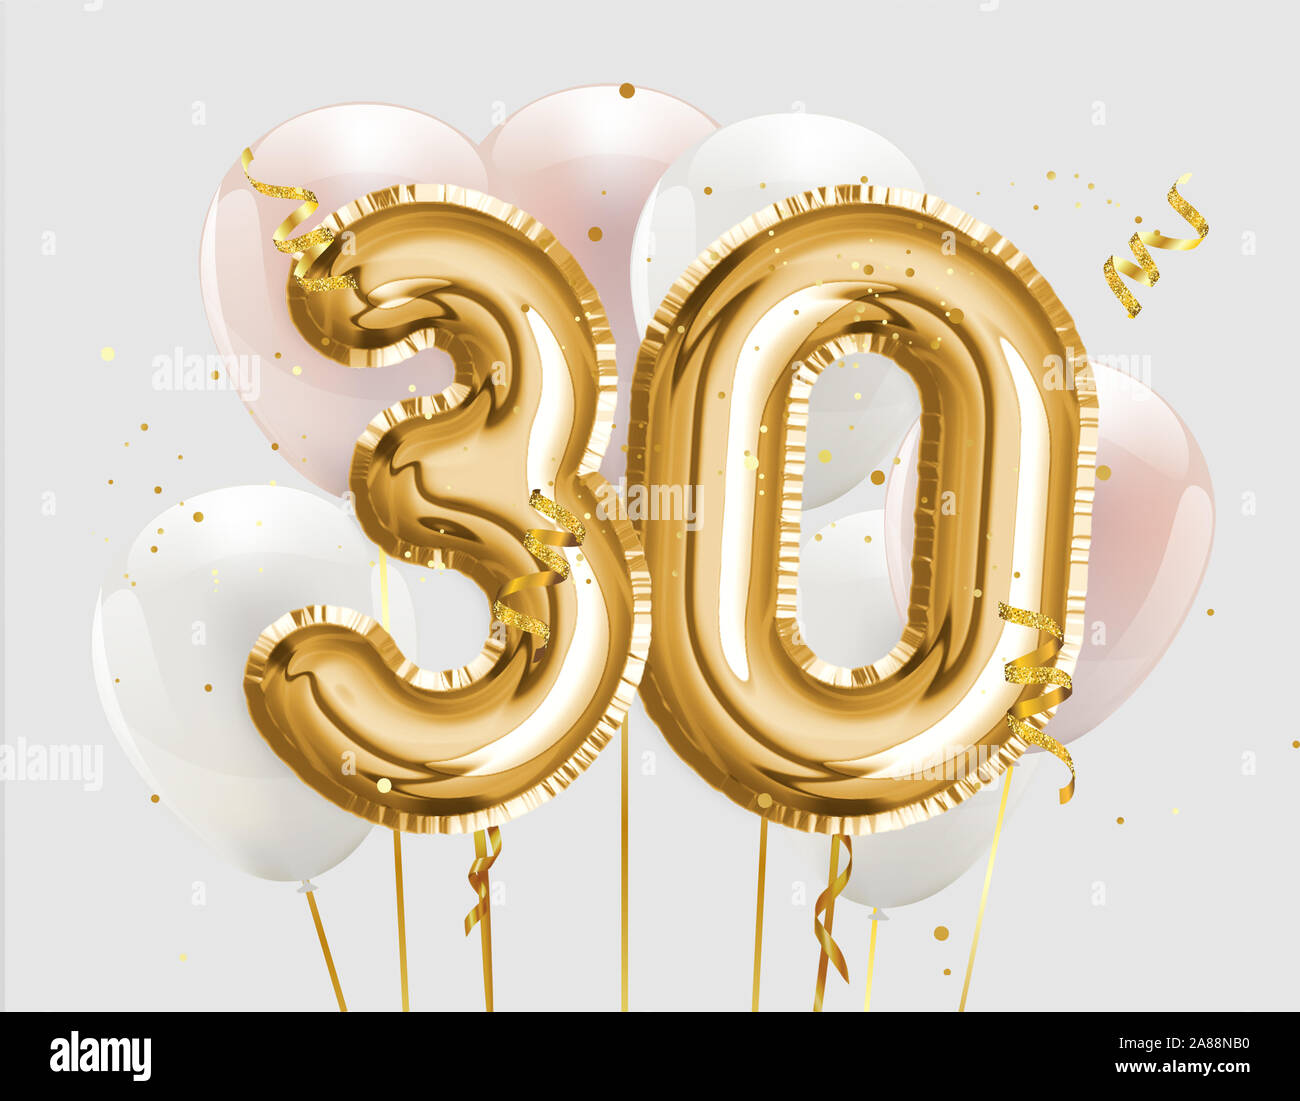 Heureux 30e anniversaire ballon d'aluminium fond de vœux. 30 ans anniversaire modèle logo- 30e célébration de confettis. Stock Photo. Banque D'Images